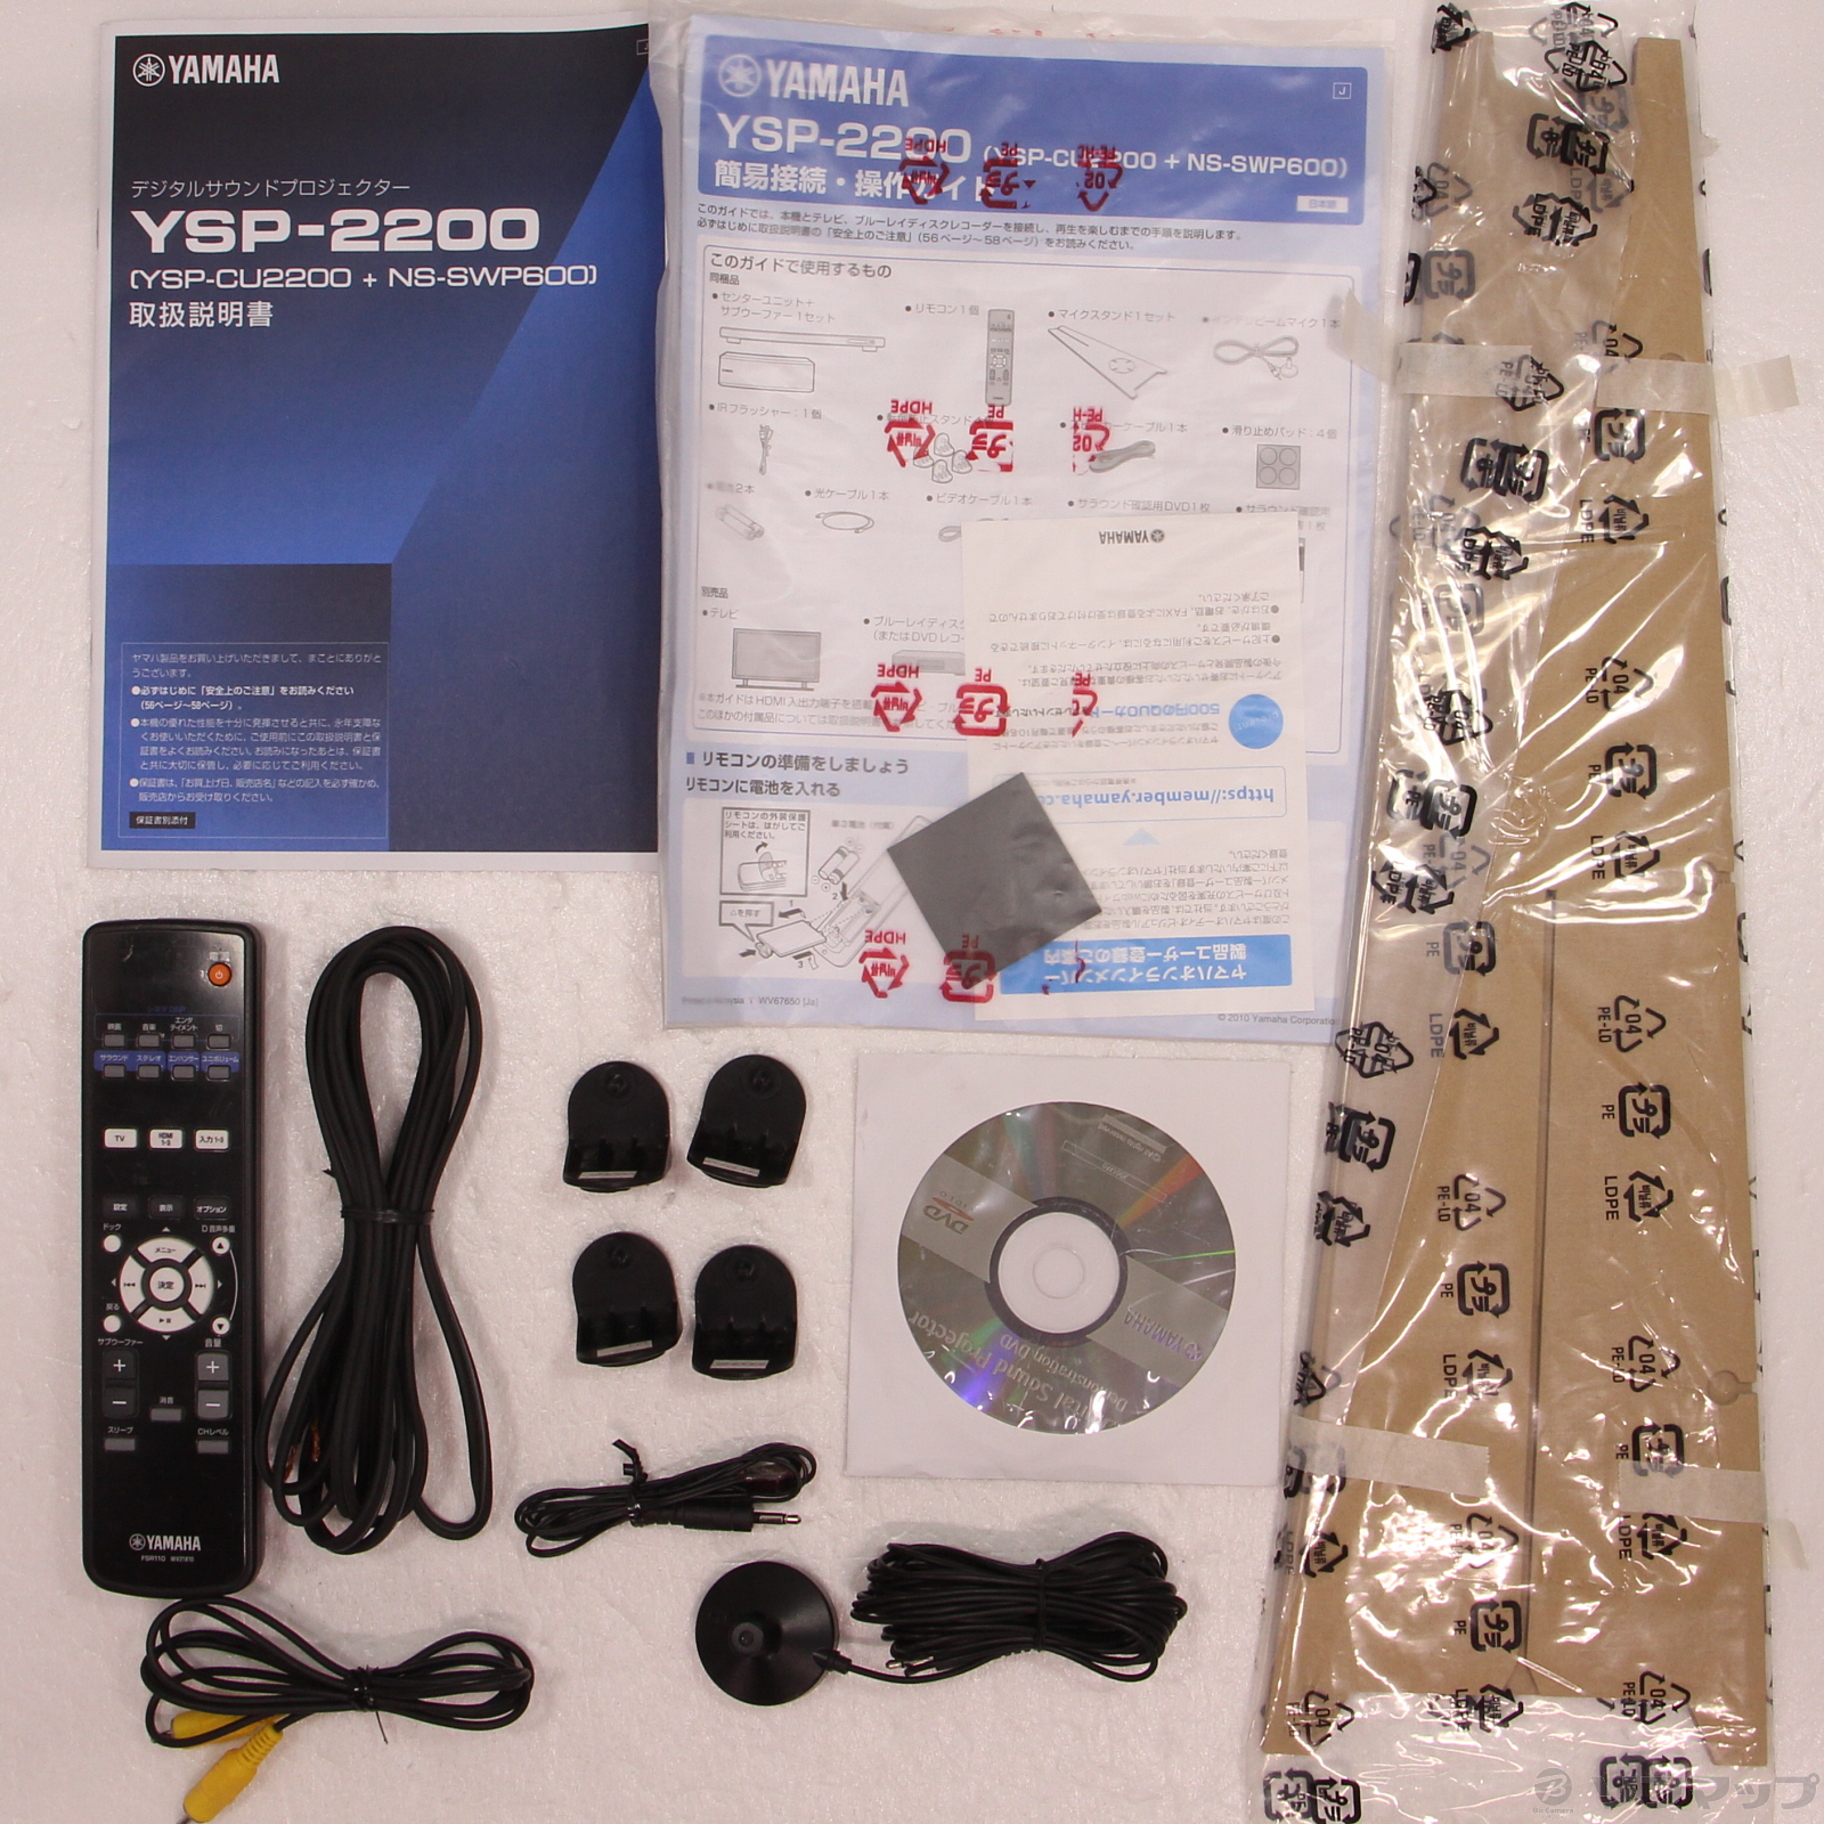 サラウンドスピーカー 7.1ch YAMAHA YSP-2200 + NS-SWP600 - オーディオ